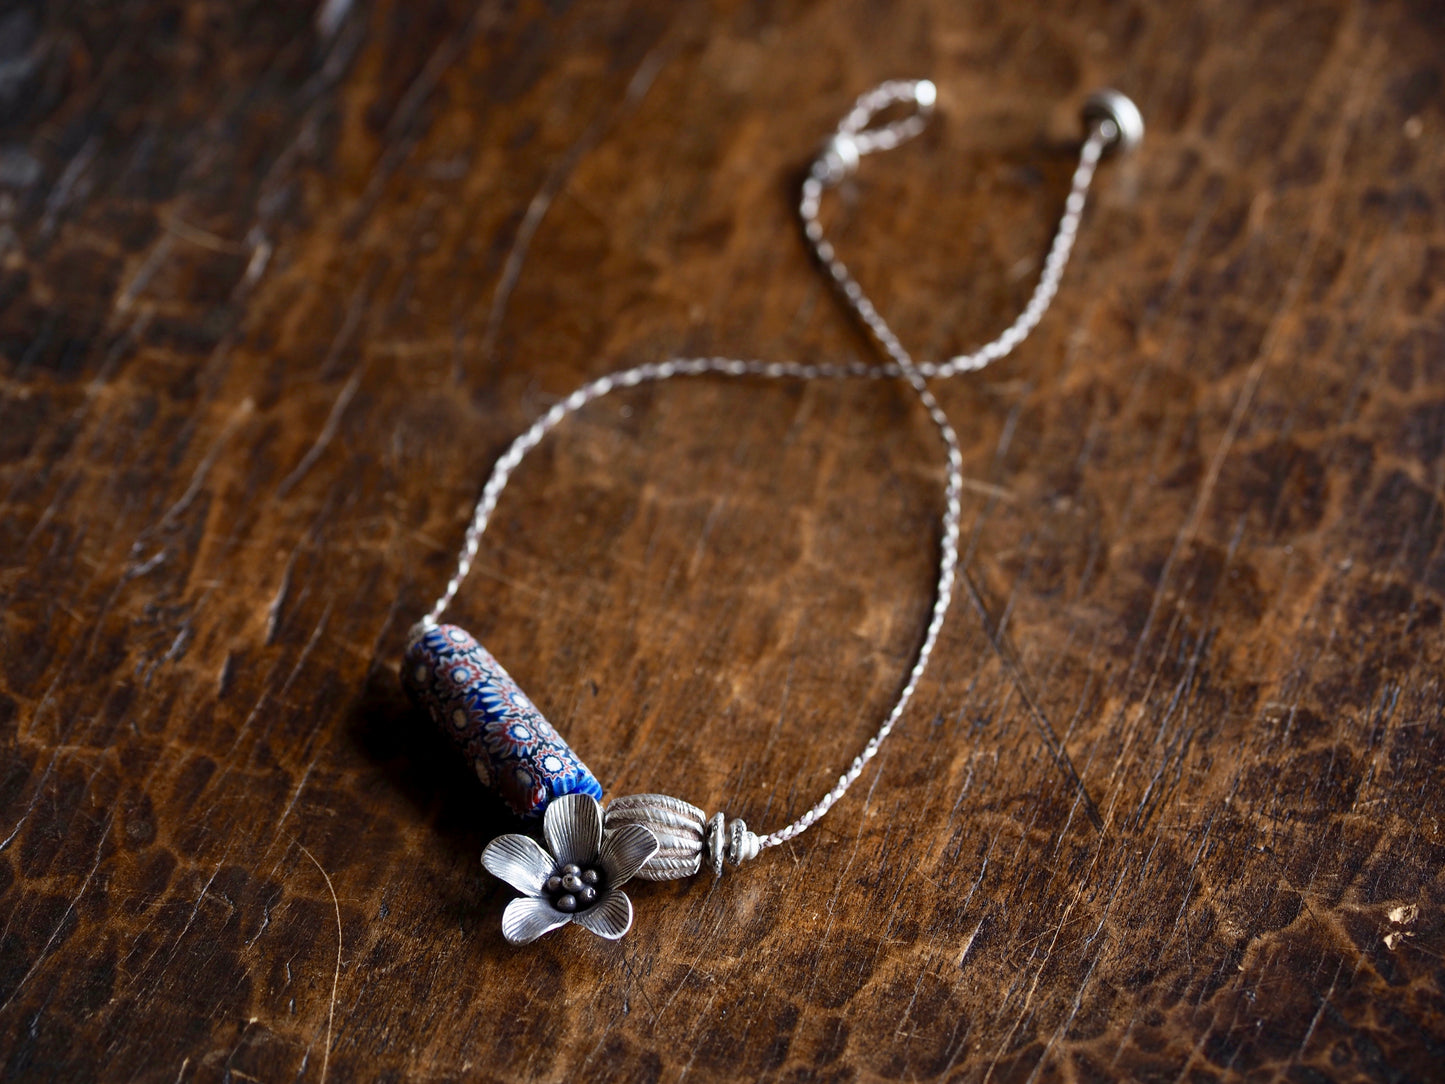 millefiori silver braid necklace 